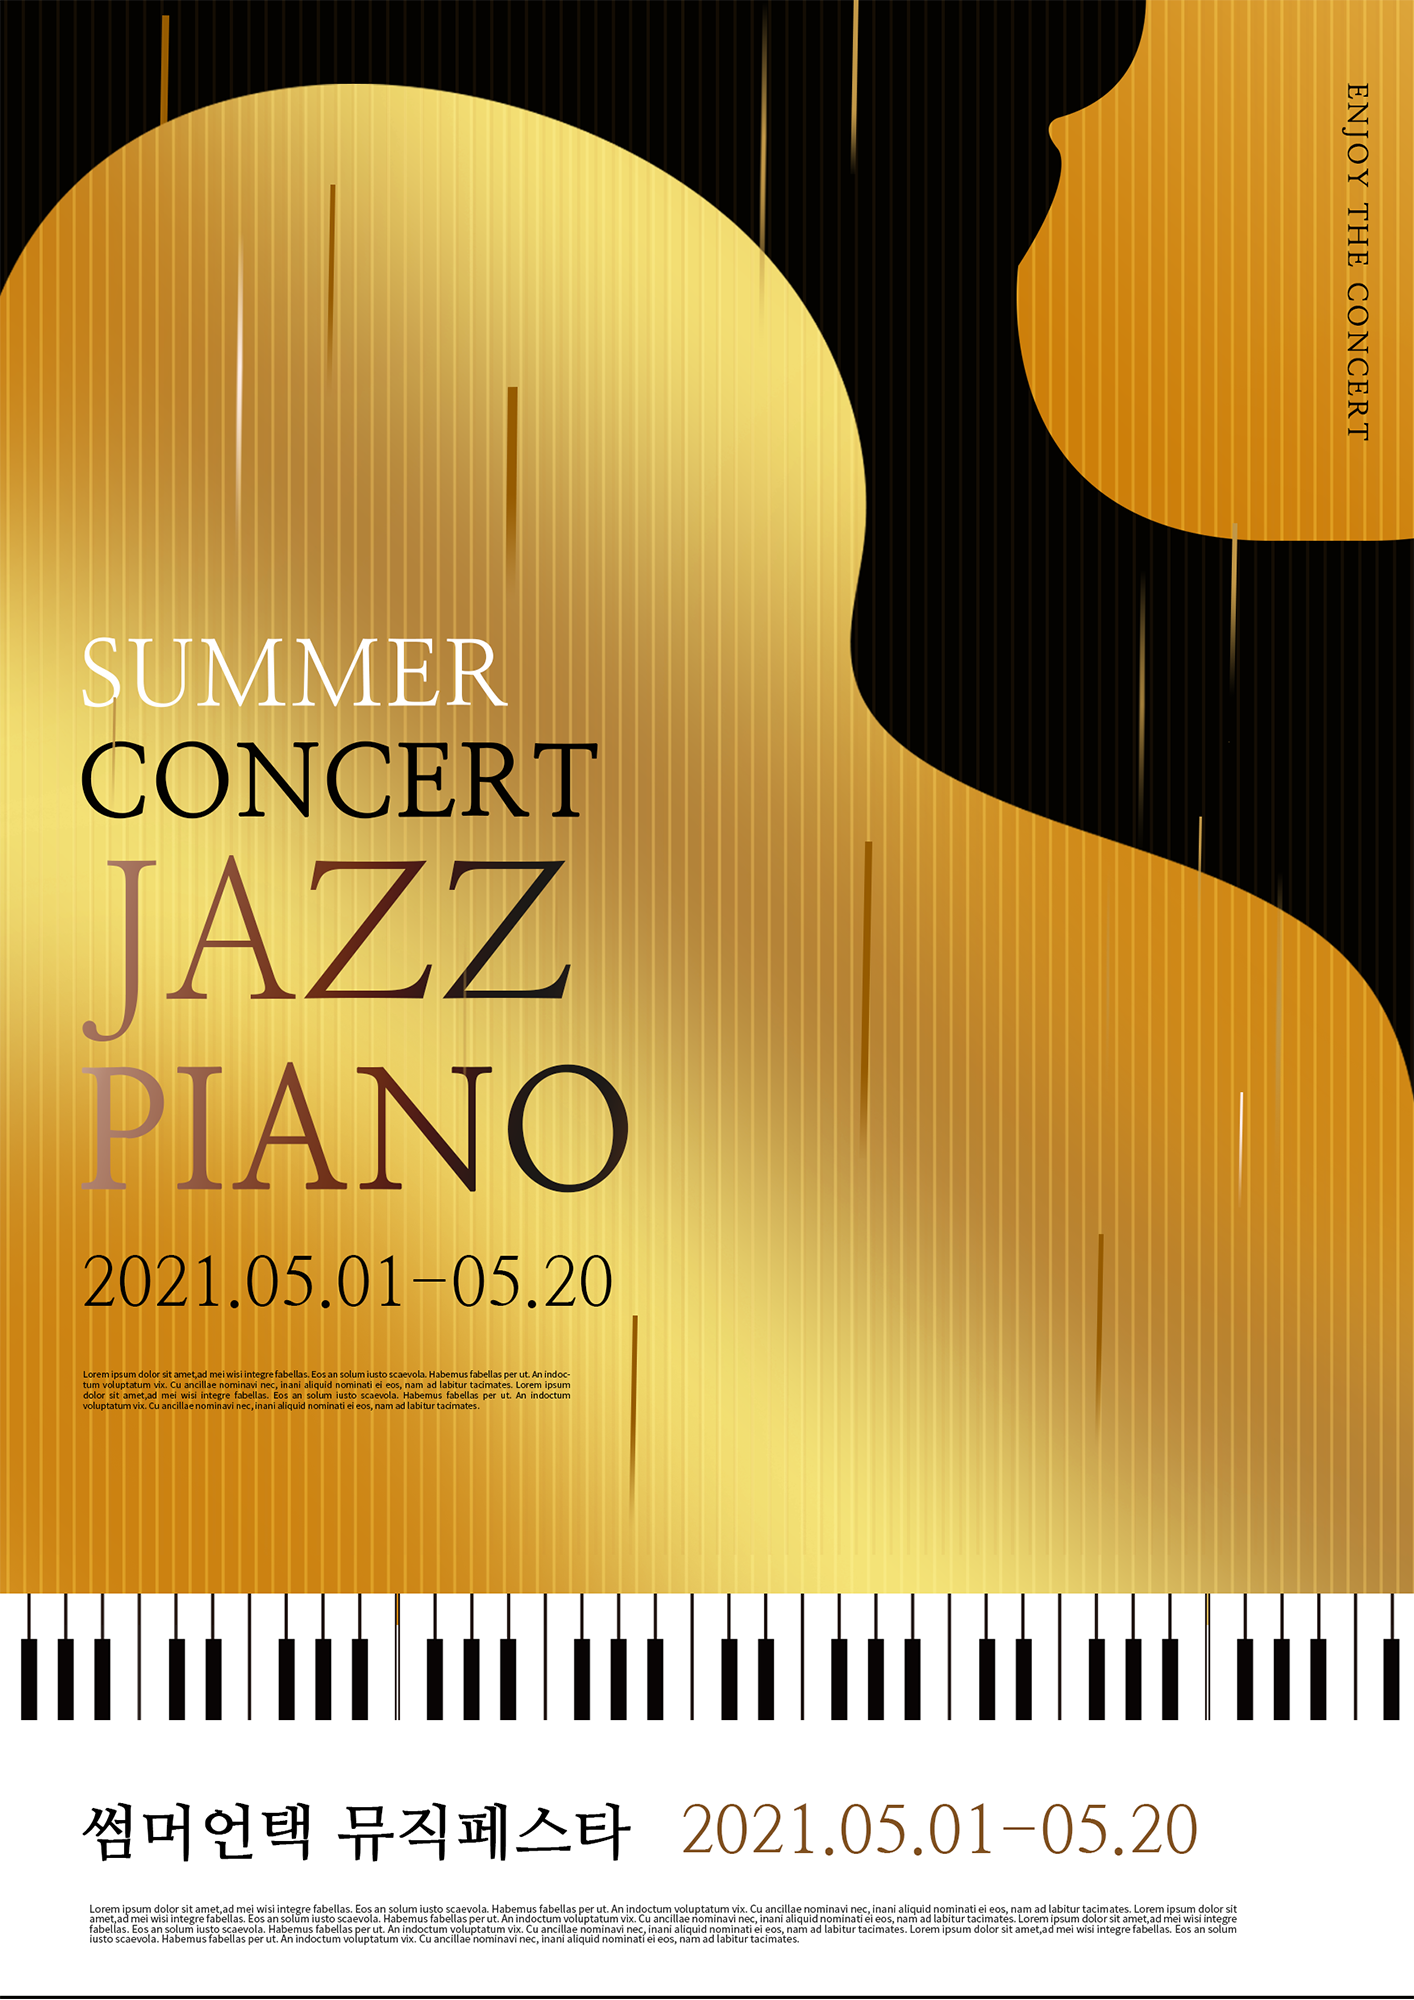 黑金钢琴轮廓线条音乐会海报图片